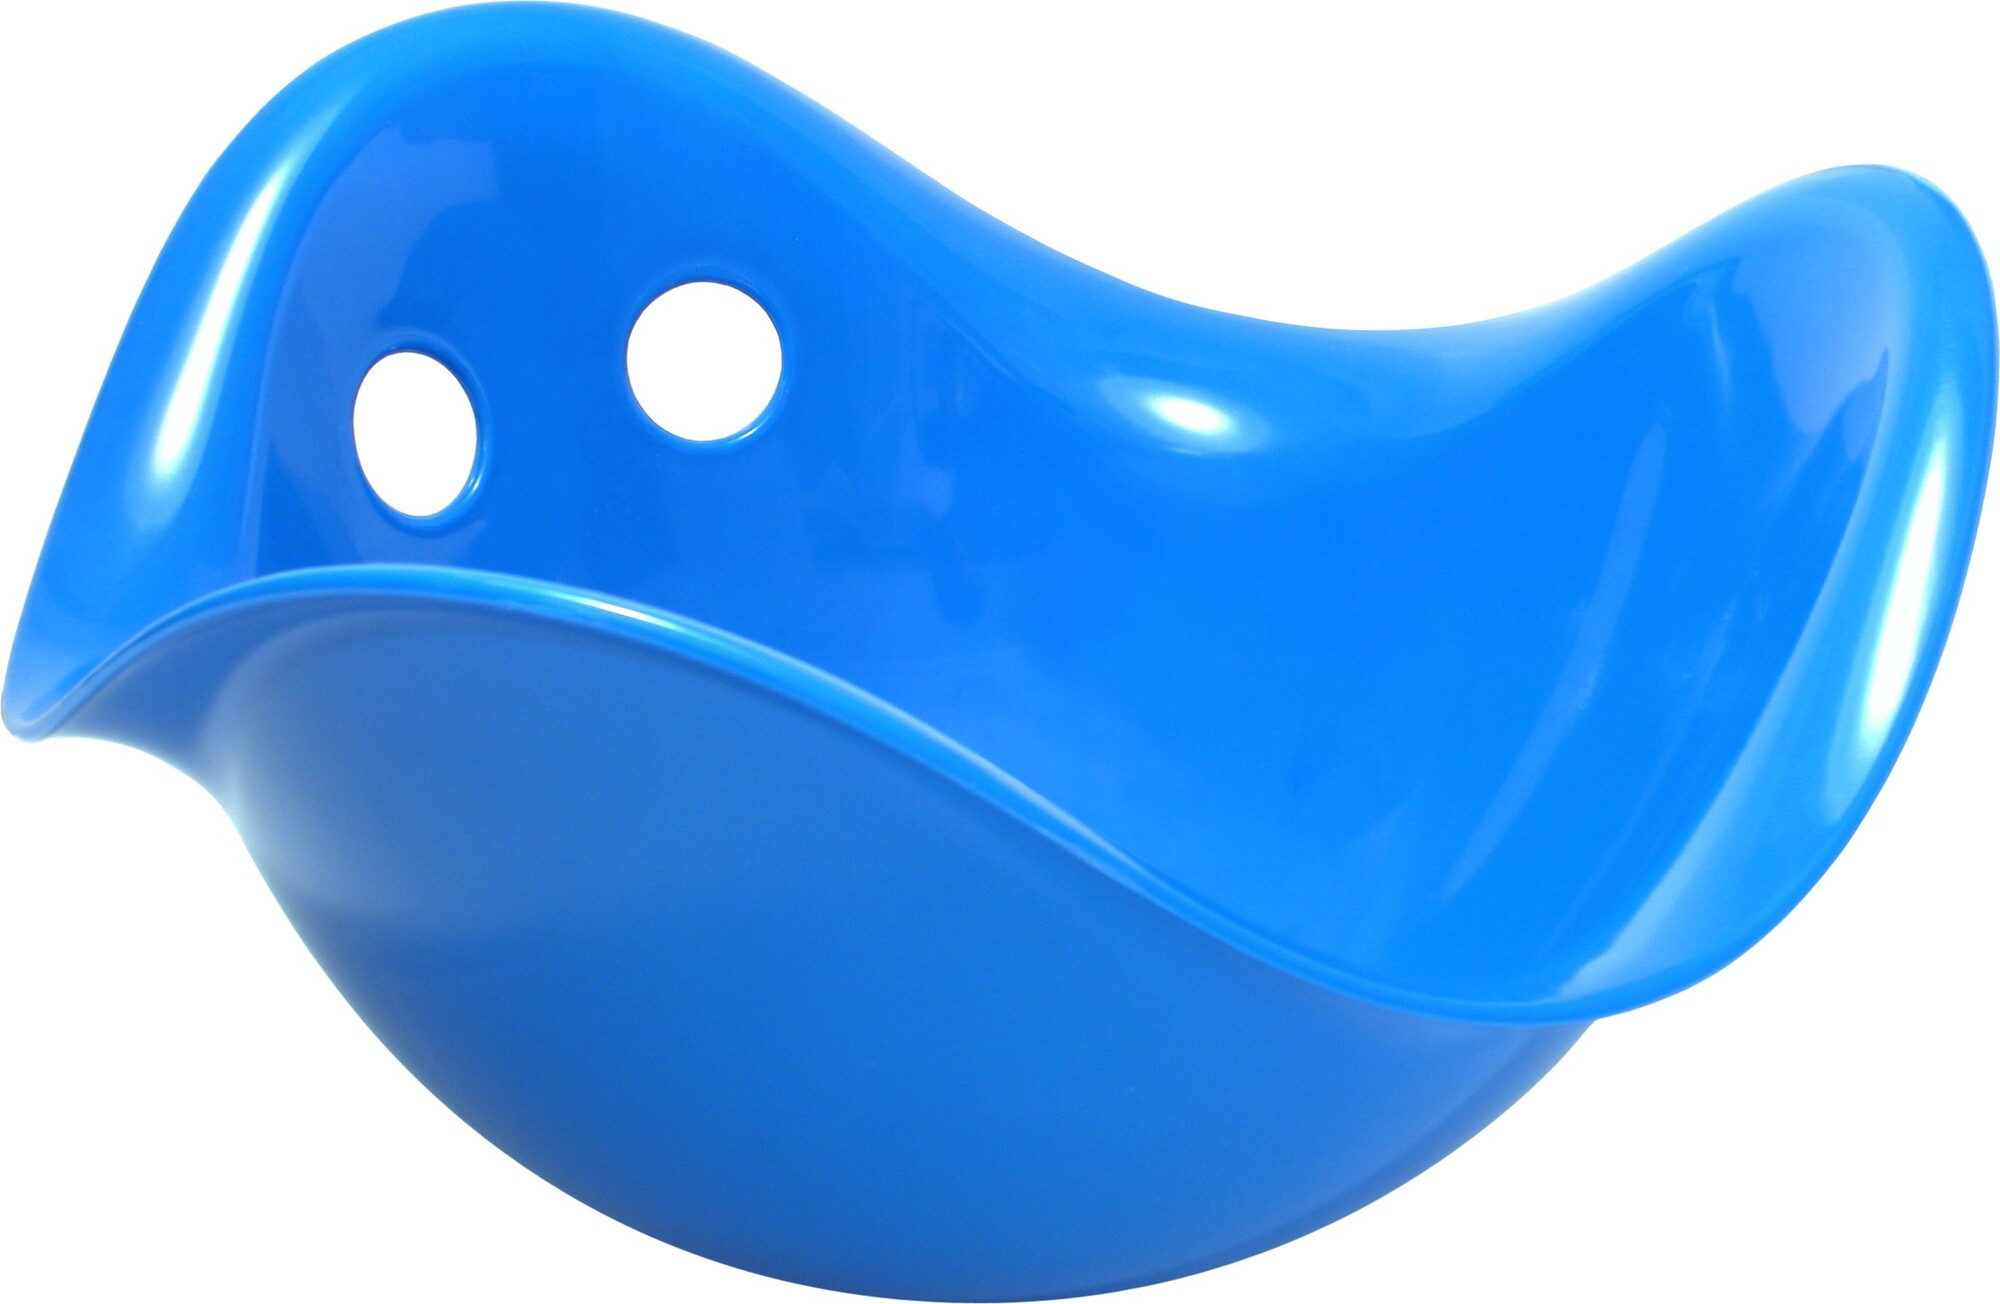 MOLUK BILIBO multifunkční hračka modrá